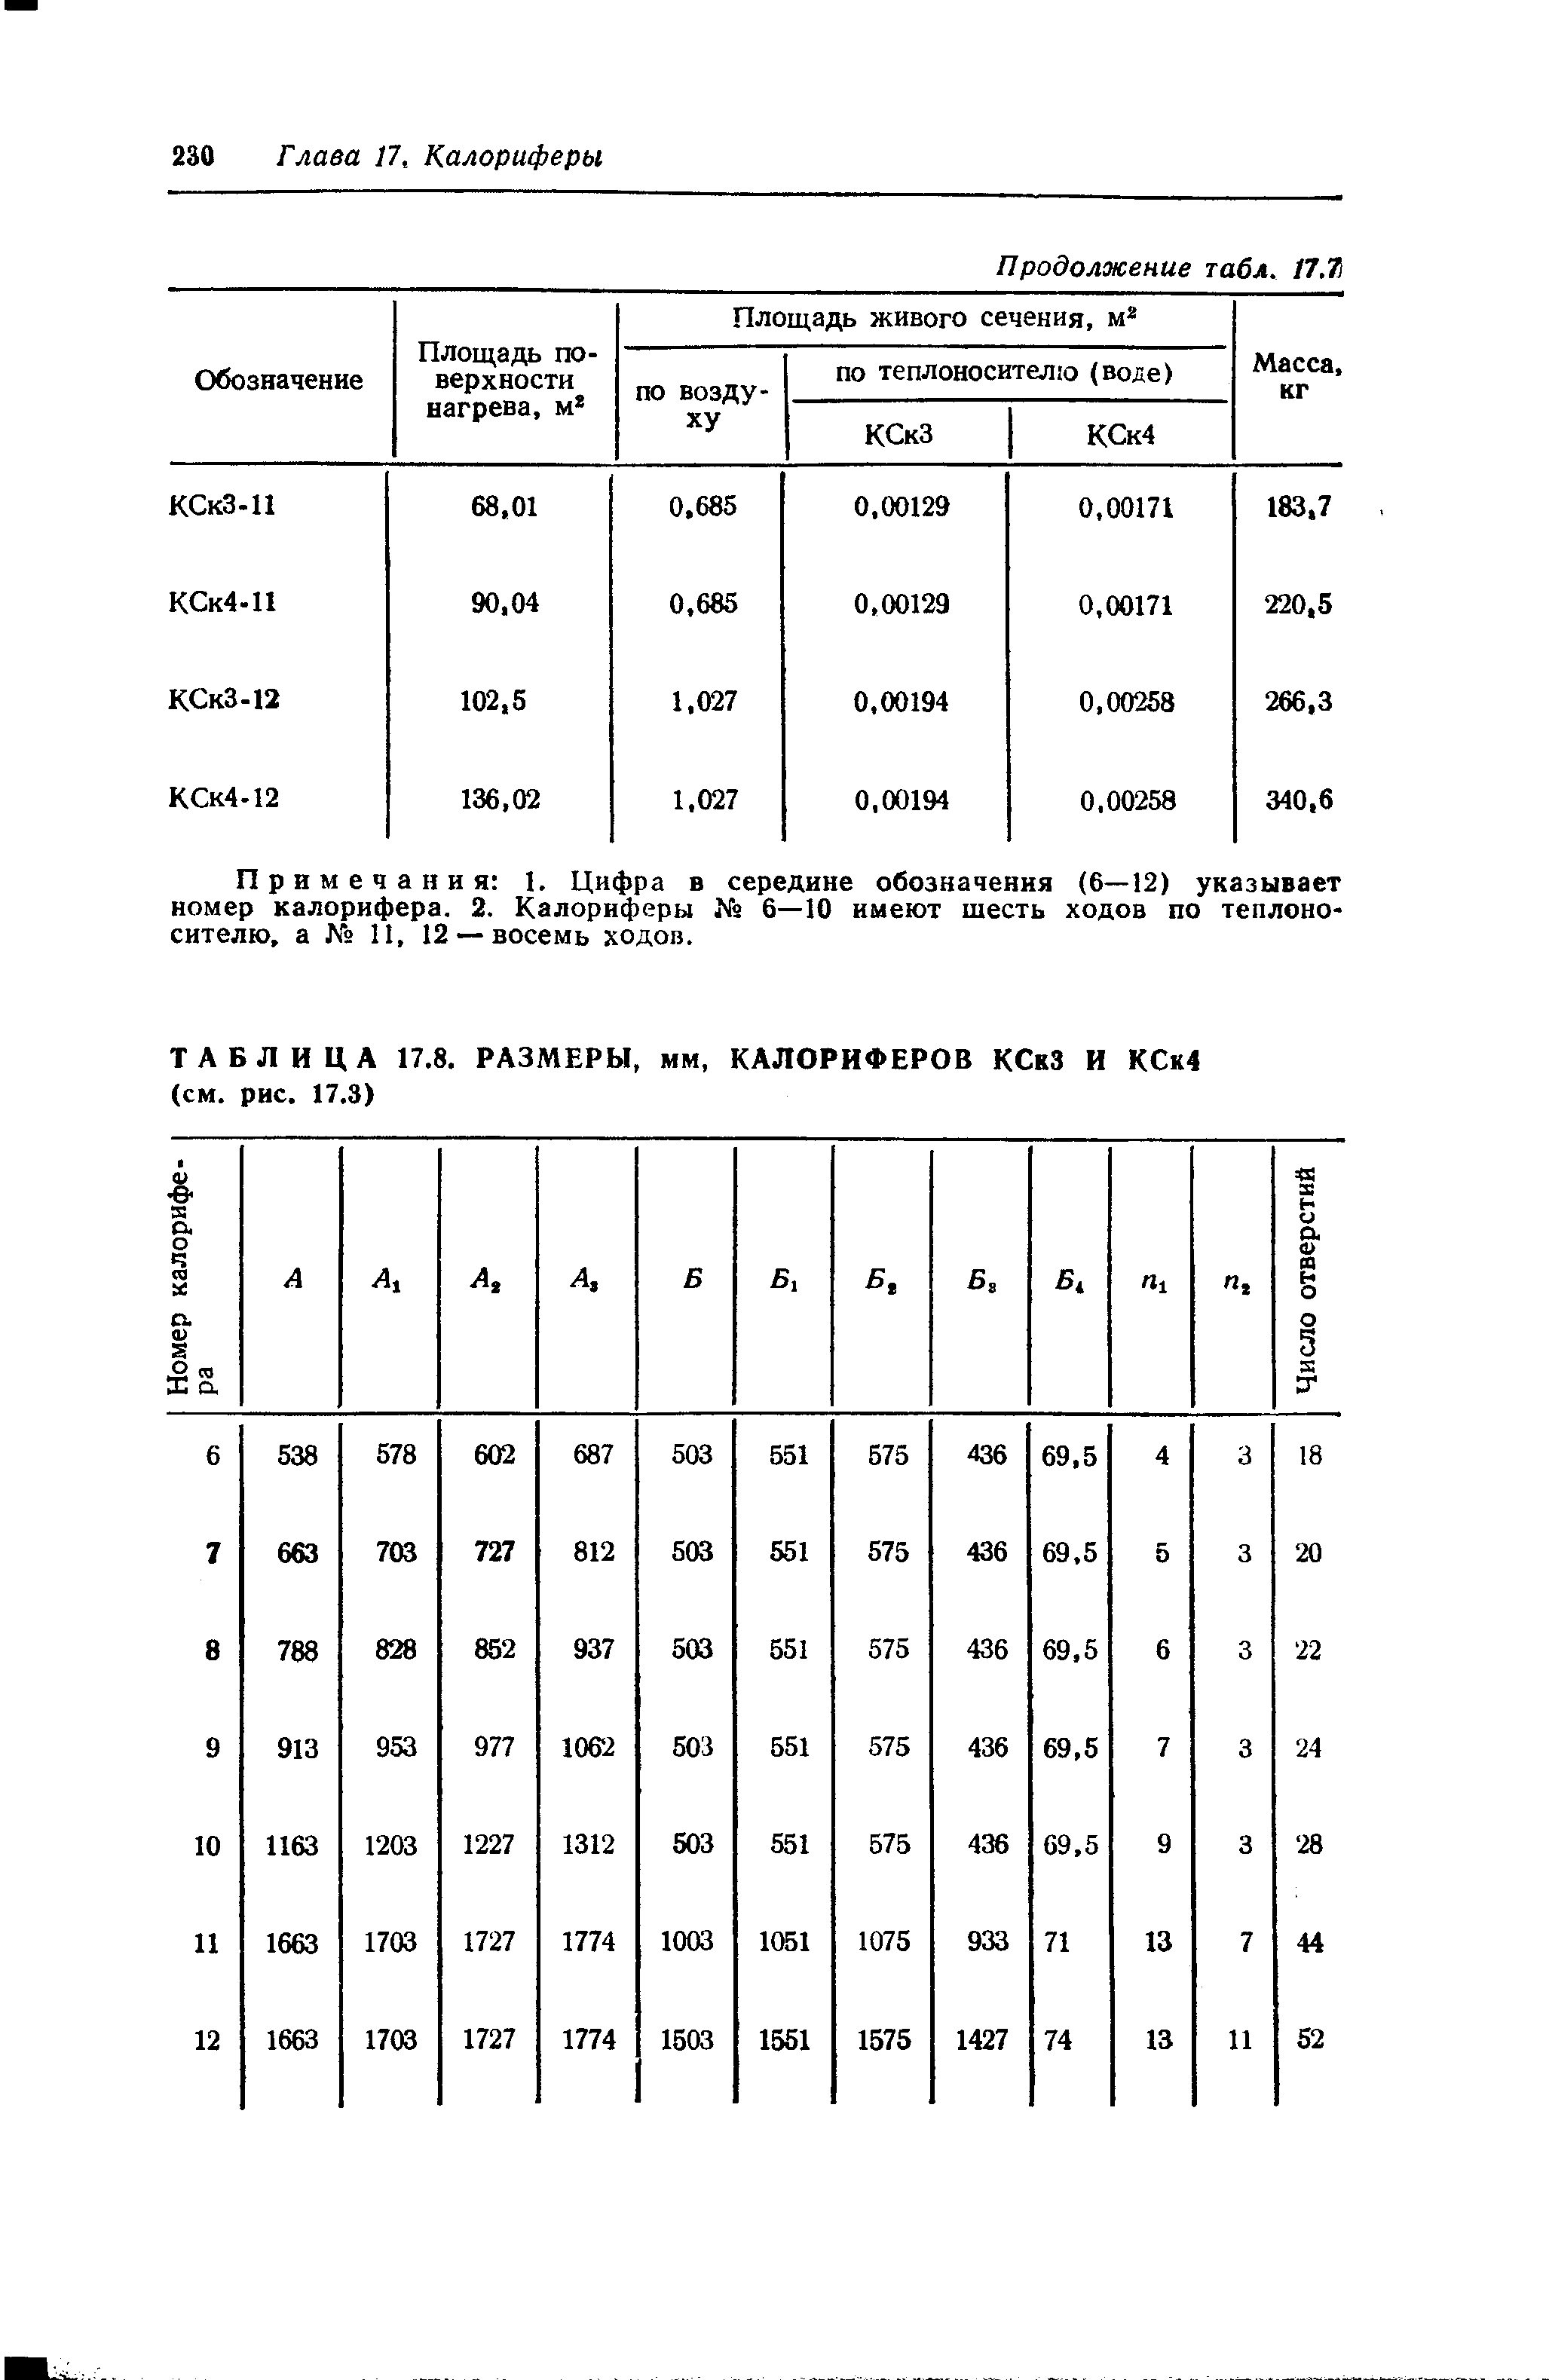 Примечания 1. Цифра в середине обозначения (6—12) указывает номер калорифера. 2. Калориферы 6—10 имеют шесть ходов по теплоносителю, а 11, 12 — восемь ходов.
